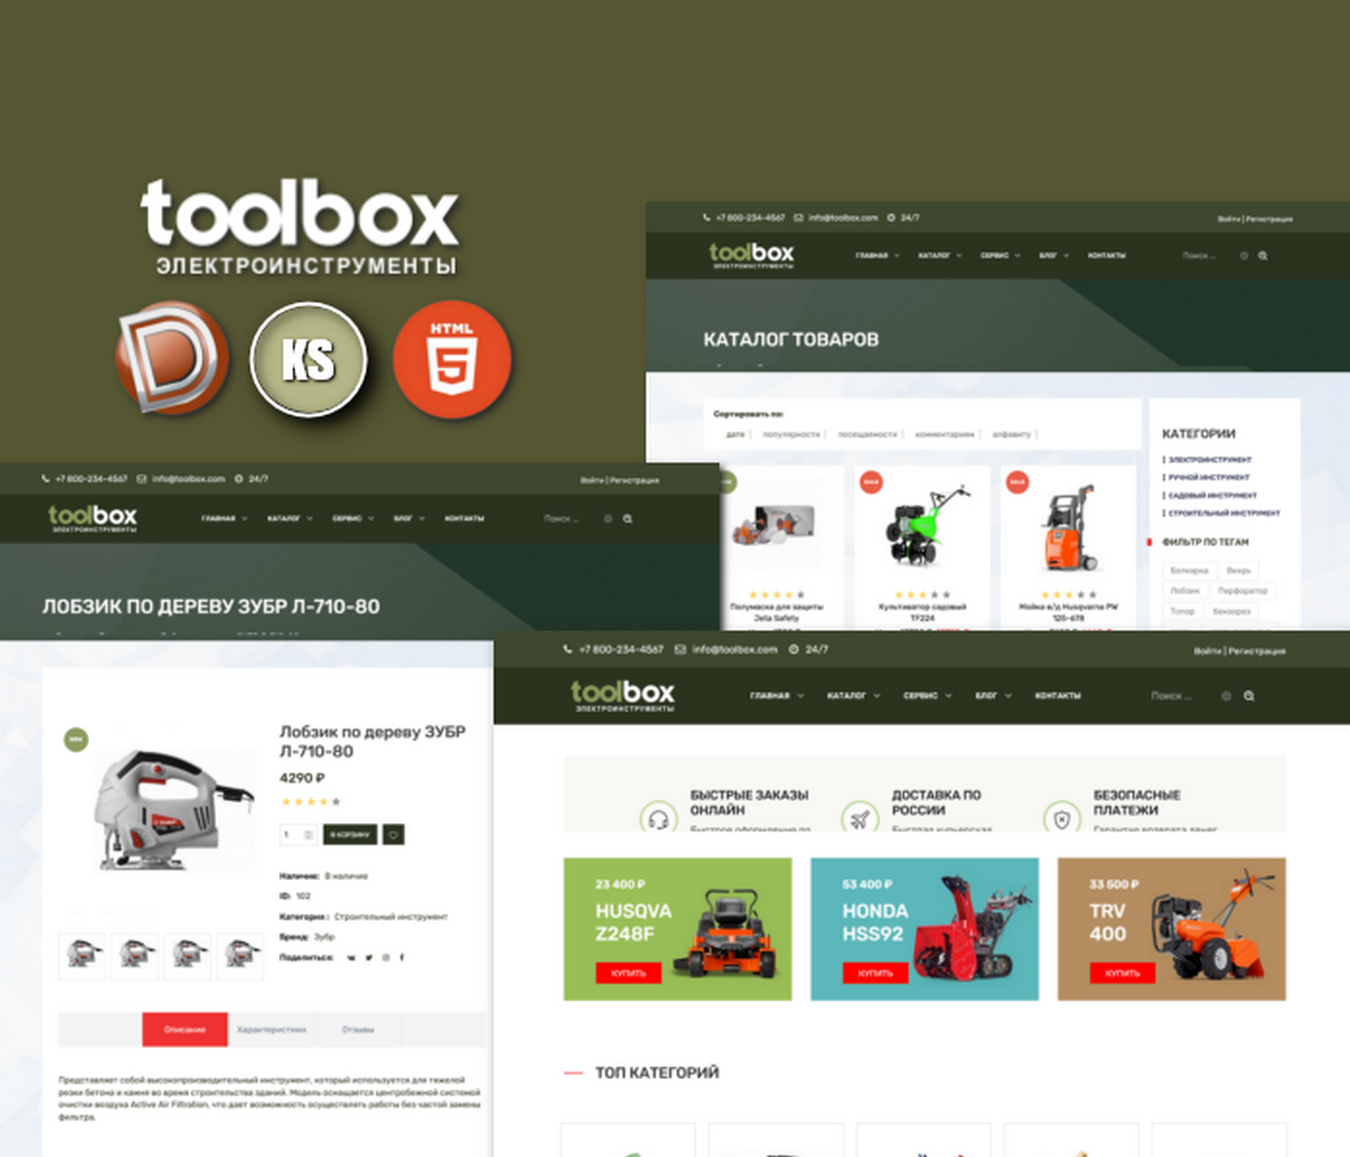 ToolBox - proyecto de tienda de herramientas dle 15.1